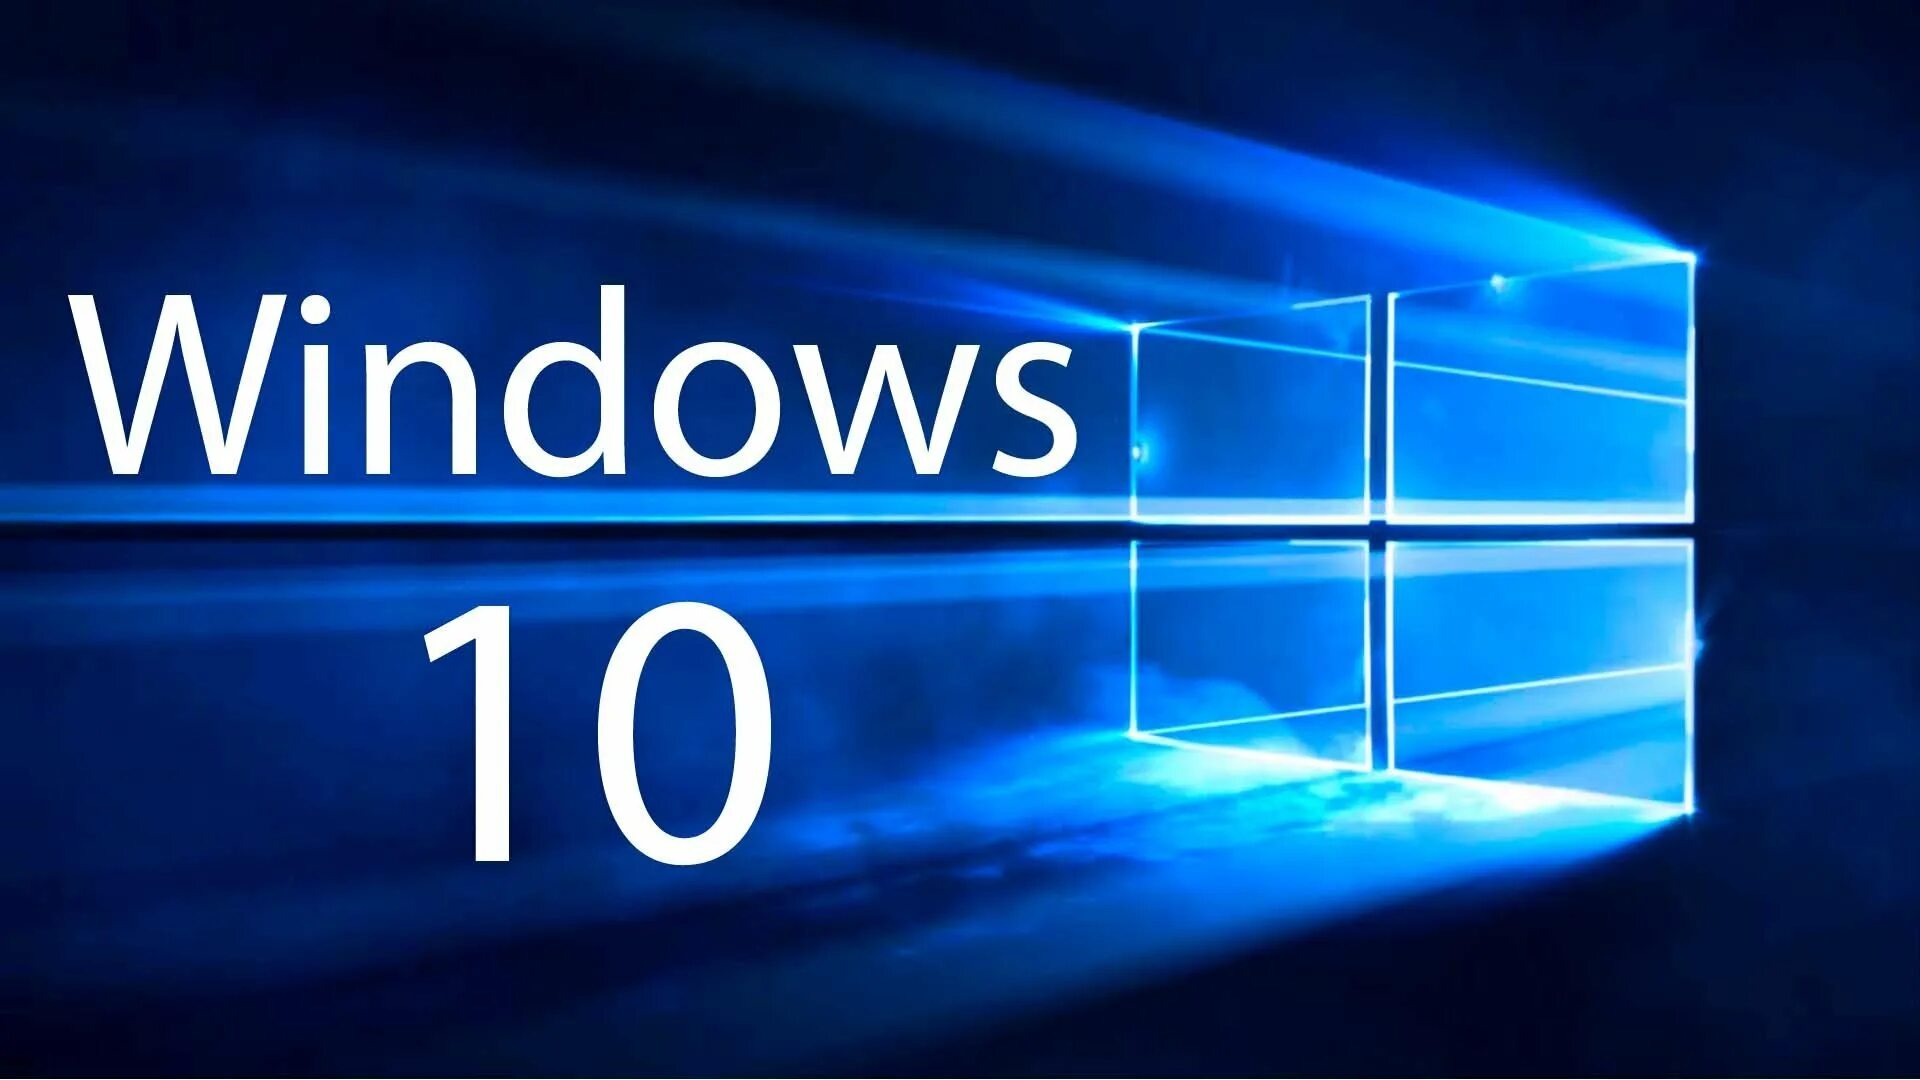 Microsoft Windows 10. ОС виндовс 10. Логотип виндовс 10. Картинки виндовс 10.